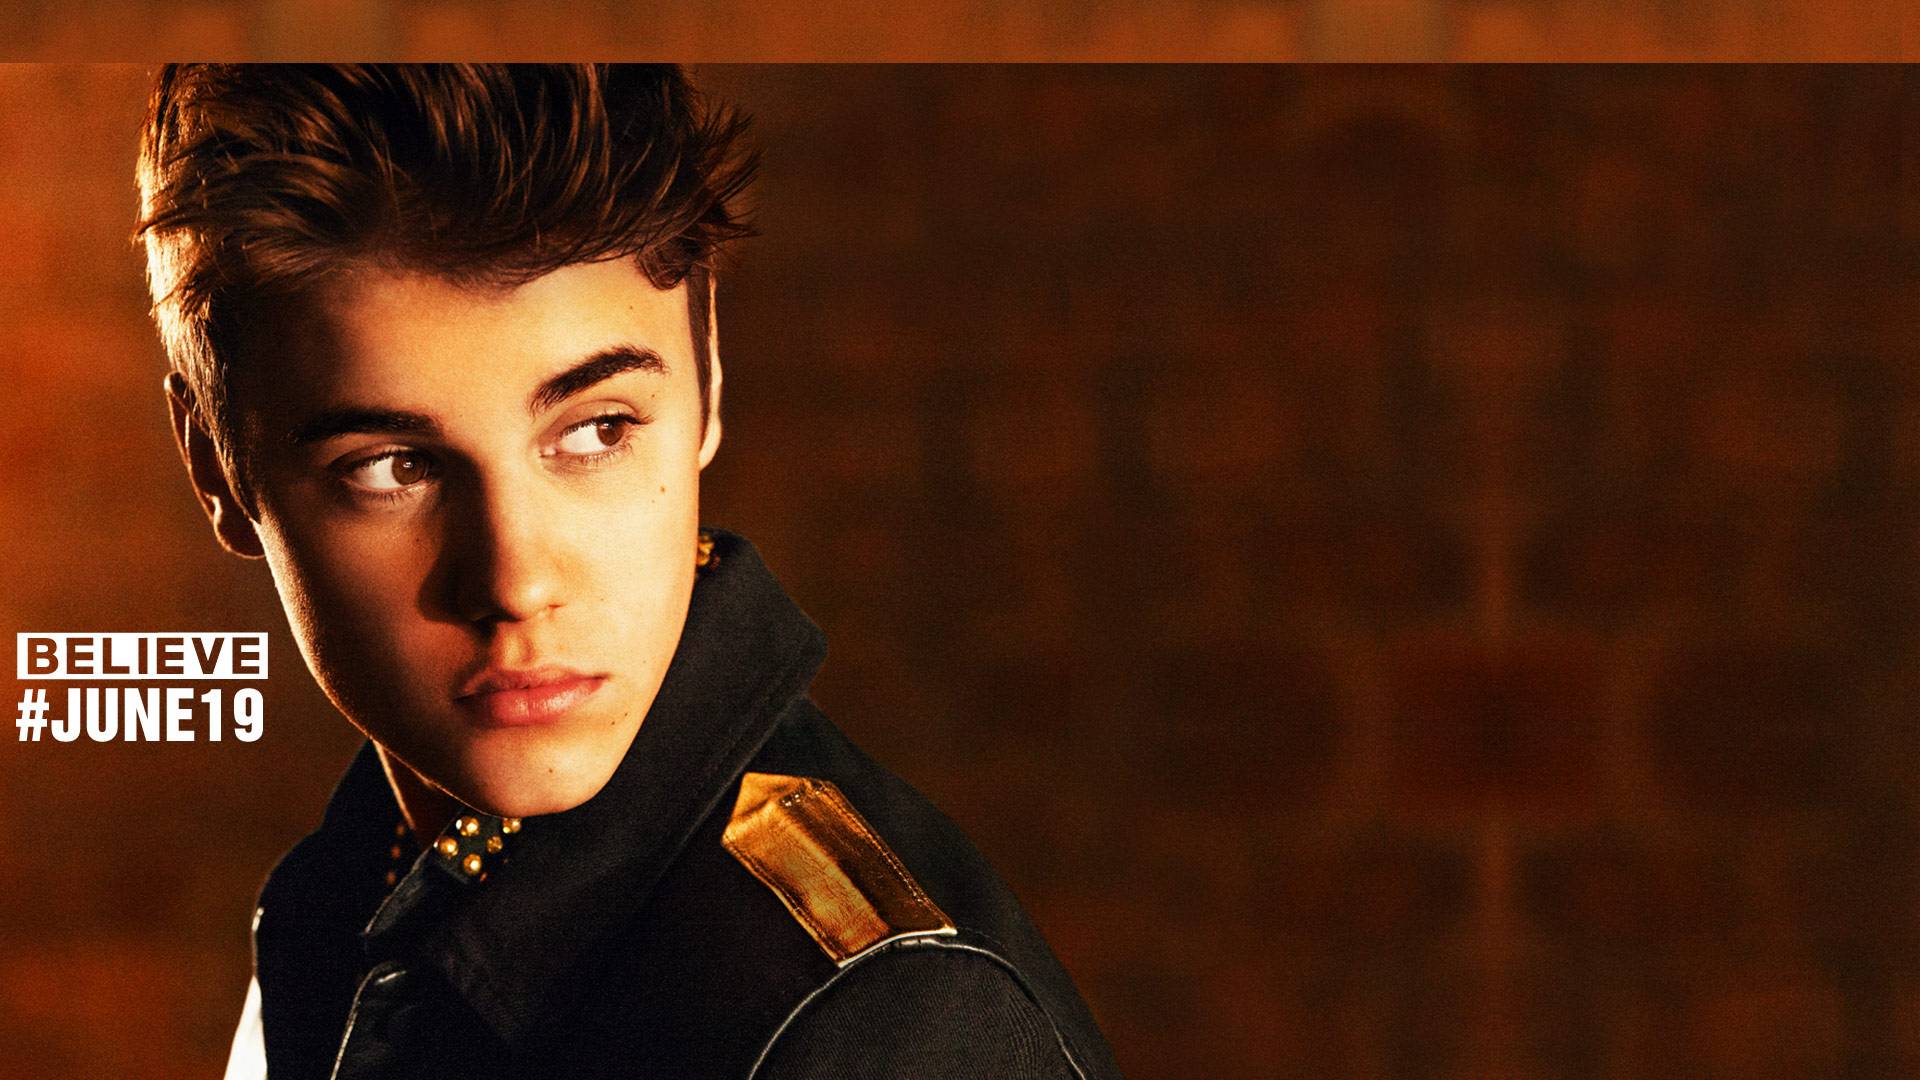 Justin Bieber Sorry Wallpaper - WallpaperSafari1920 x 1080